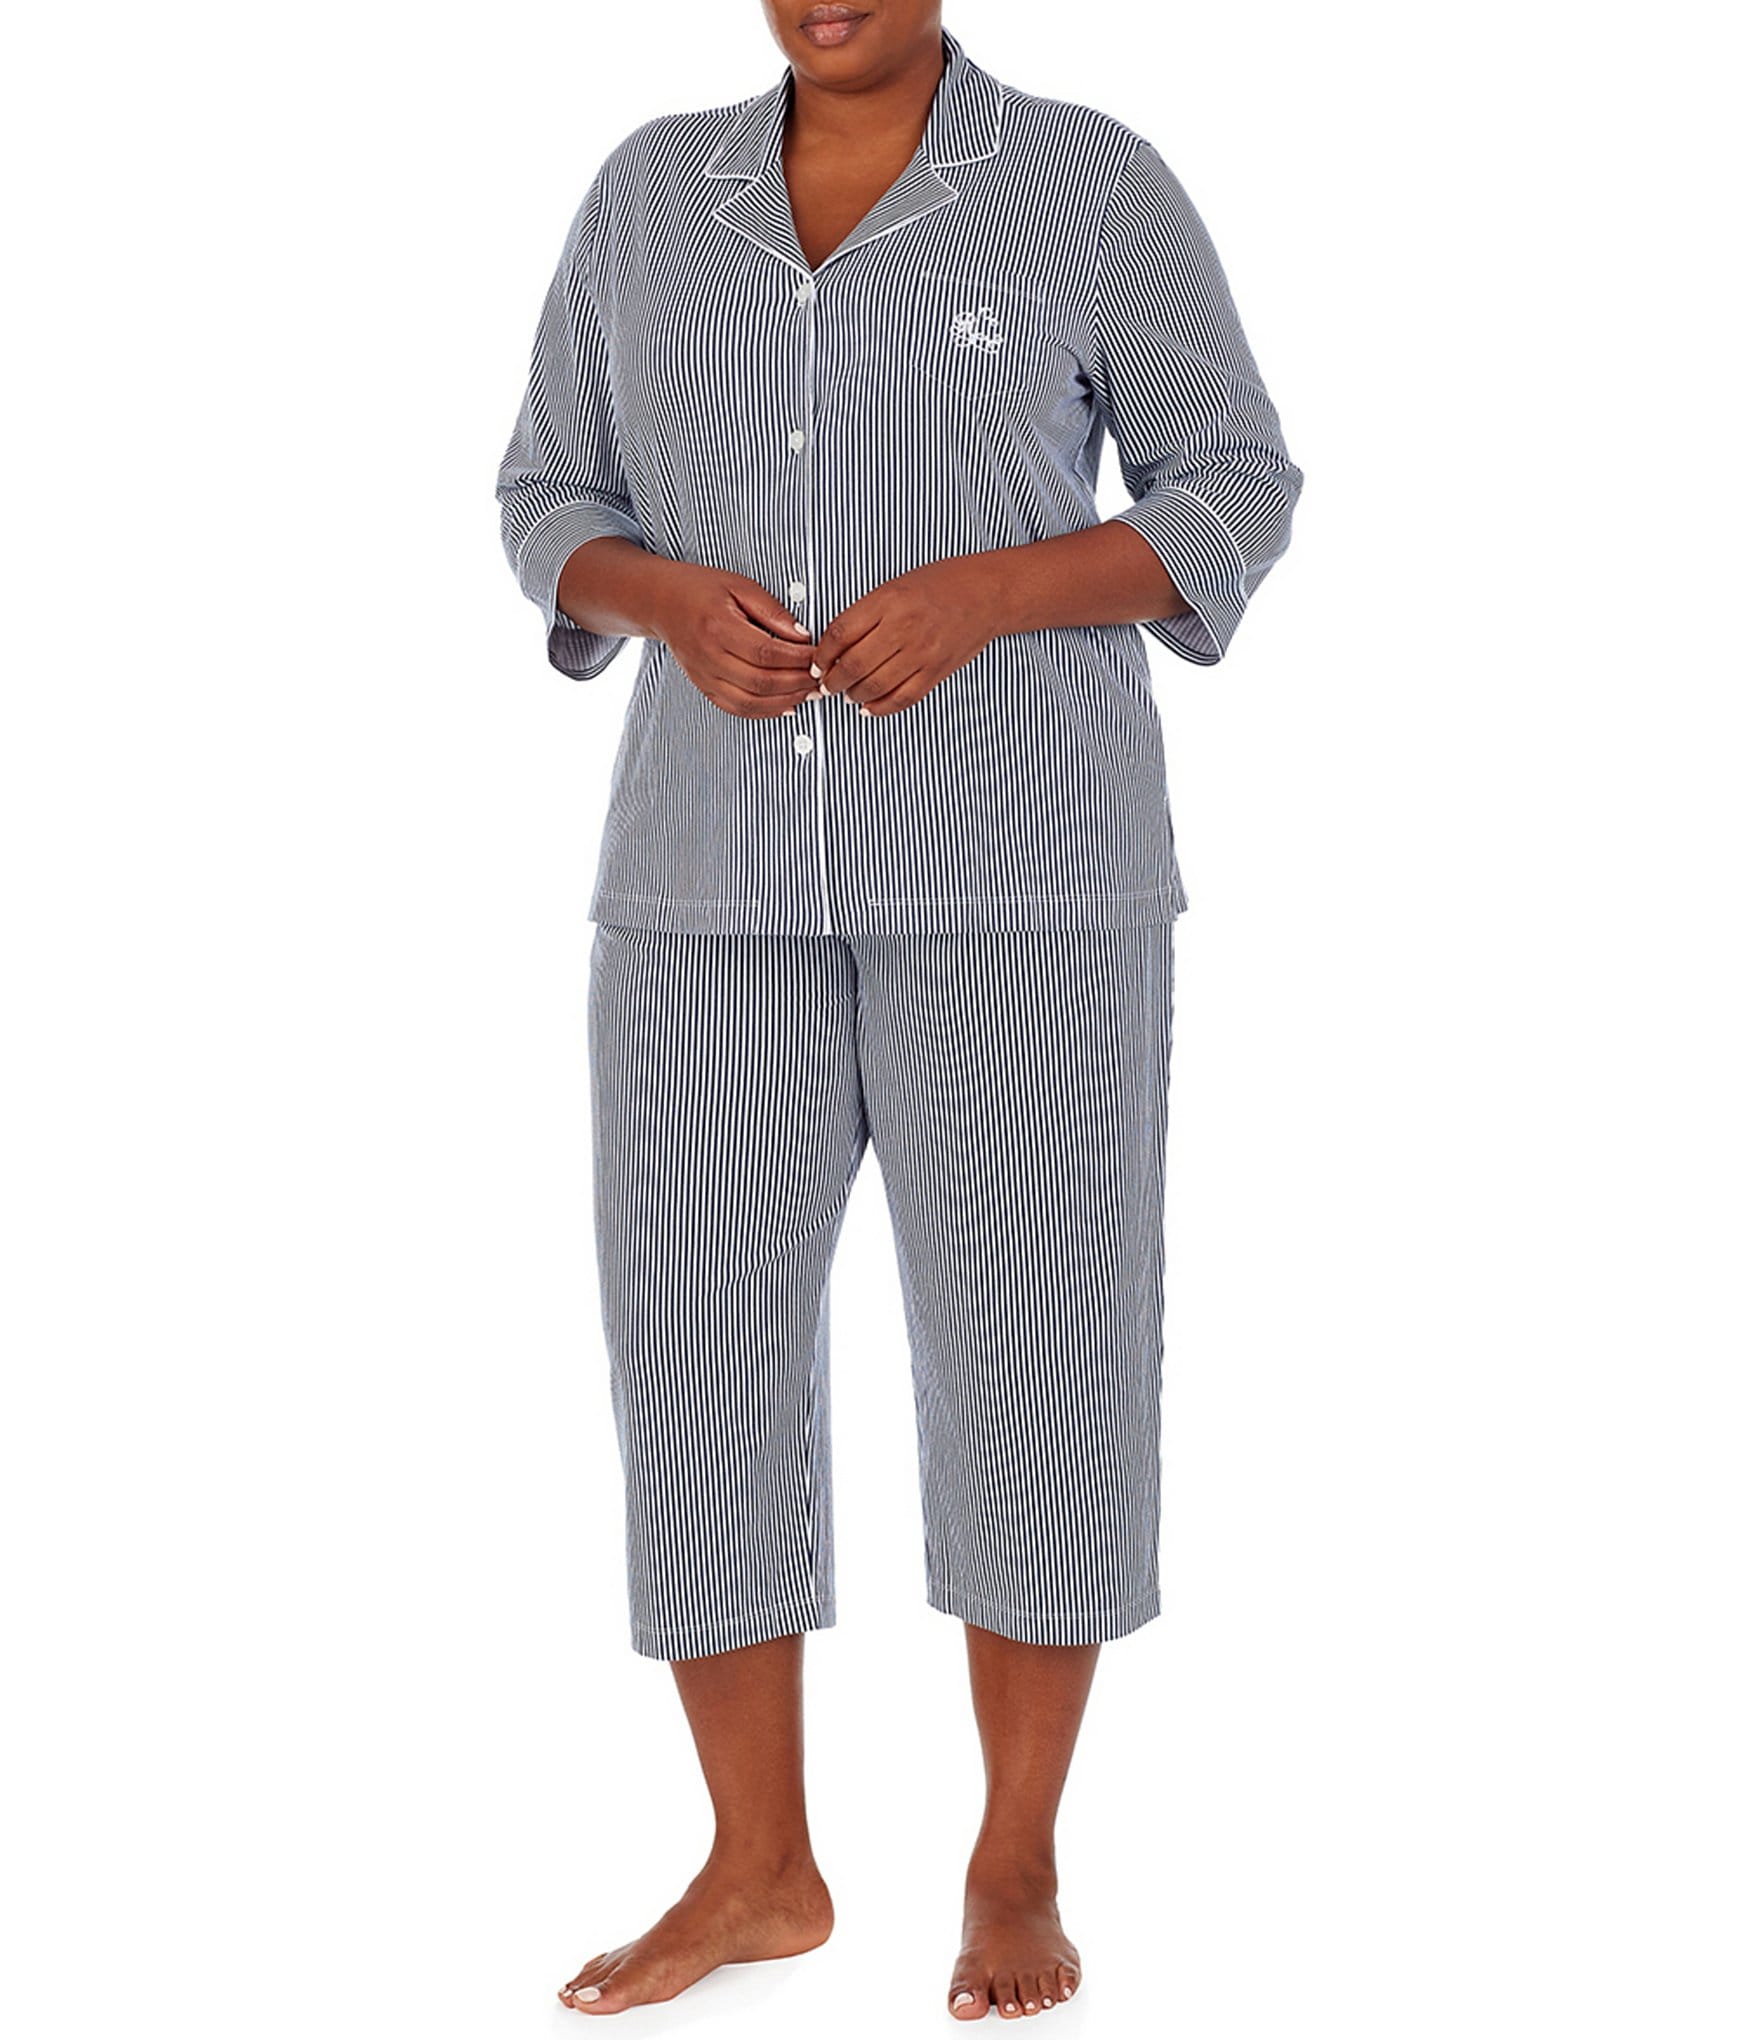 https://dimg.dillards.com/is/image/DillardsZoom/zoom/lauren-ralph-lauren-plus-striped-print-jersey-knit-capri-pajama-set/00000000_zi_70b3924a-4874-4f91-b7b8-922d1685da20.jpg